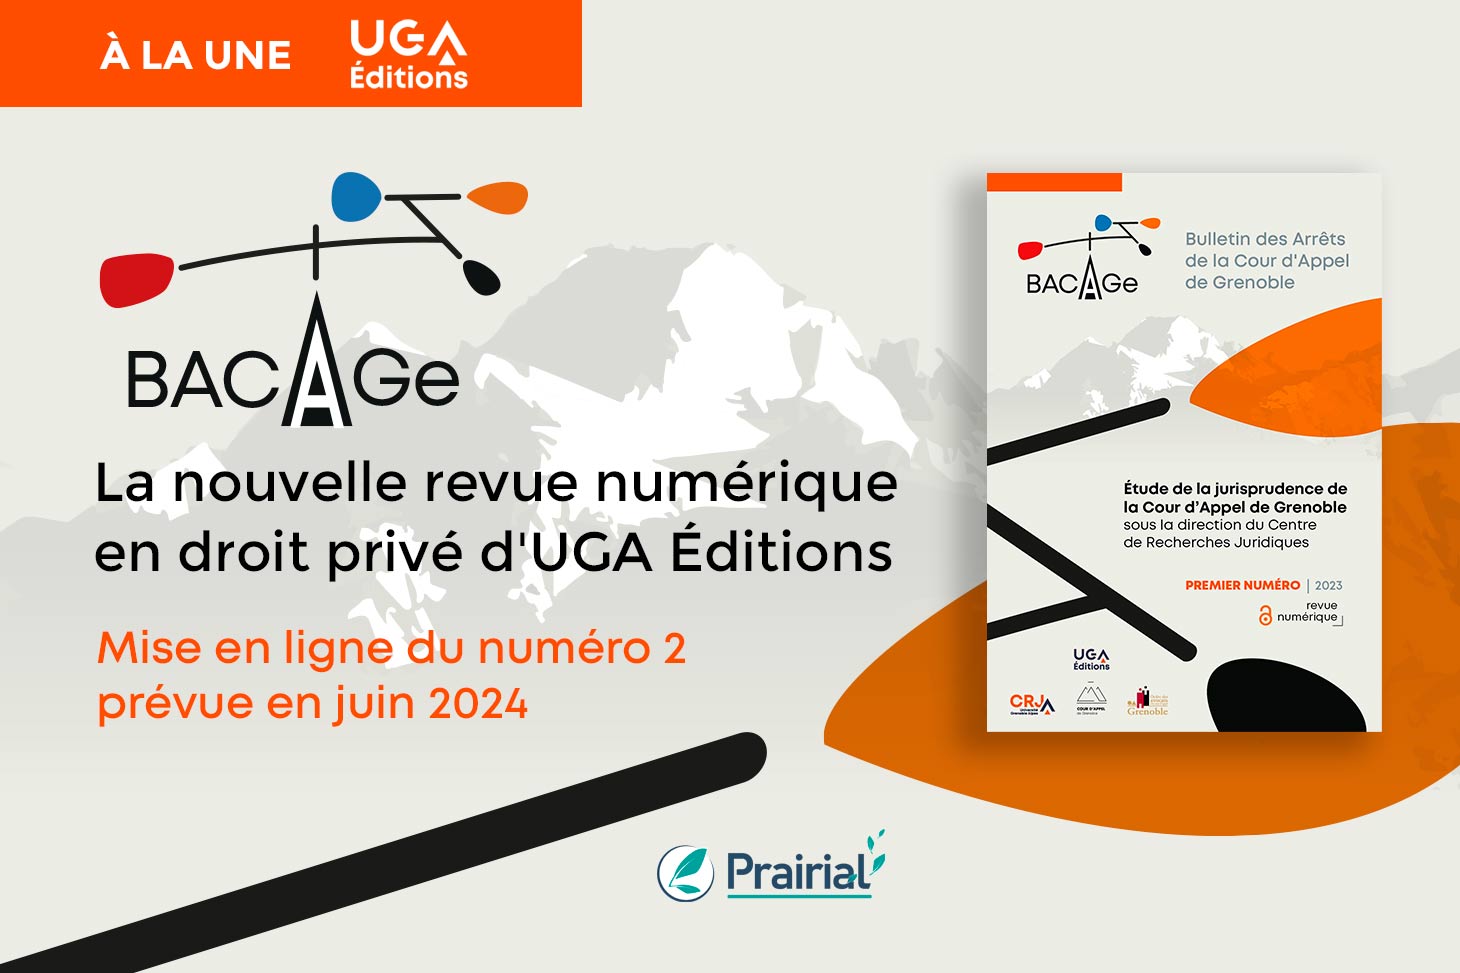  BACAGe, la nouvelle revue numérique en droit privé d'UGA Éditions